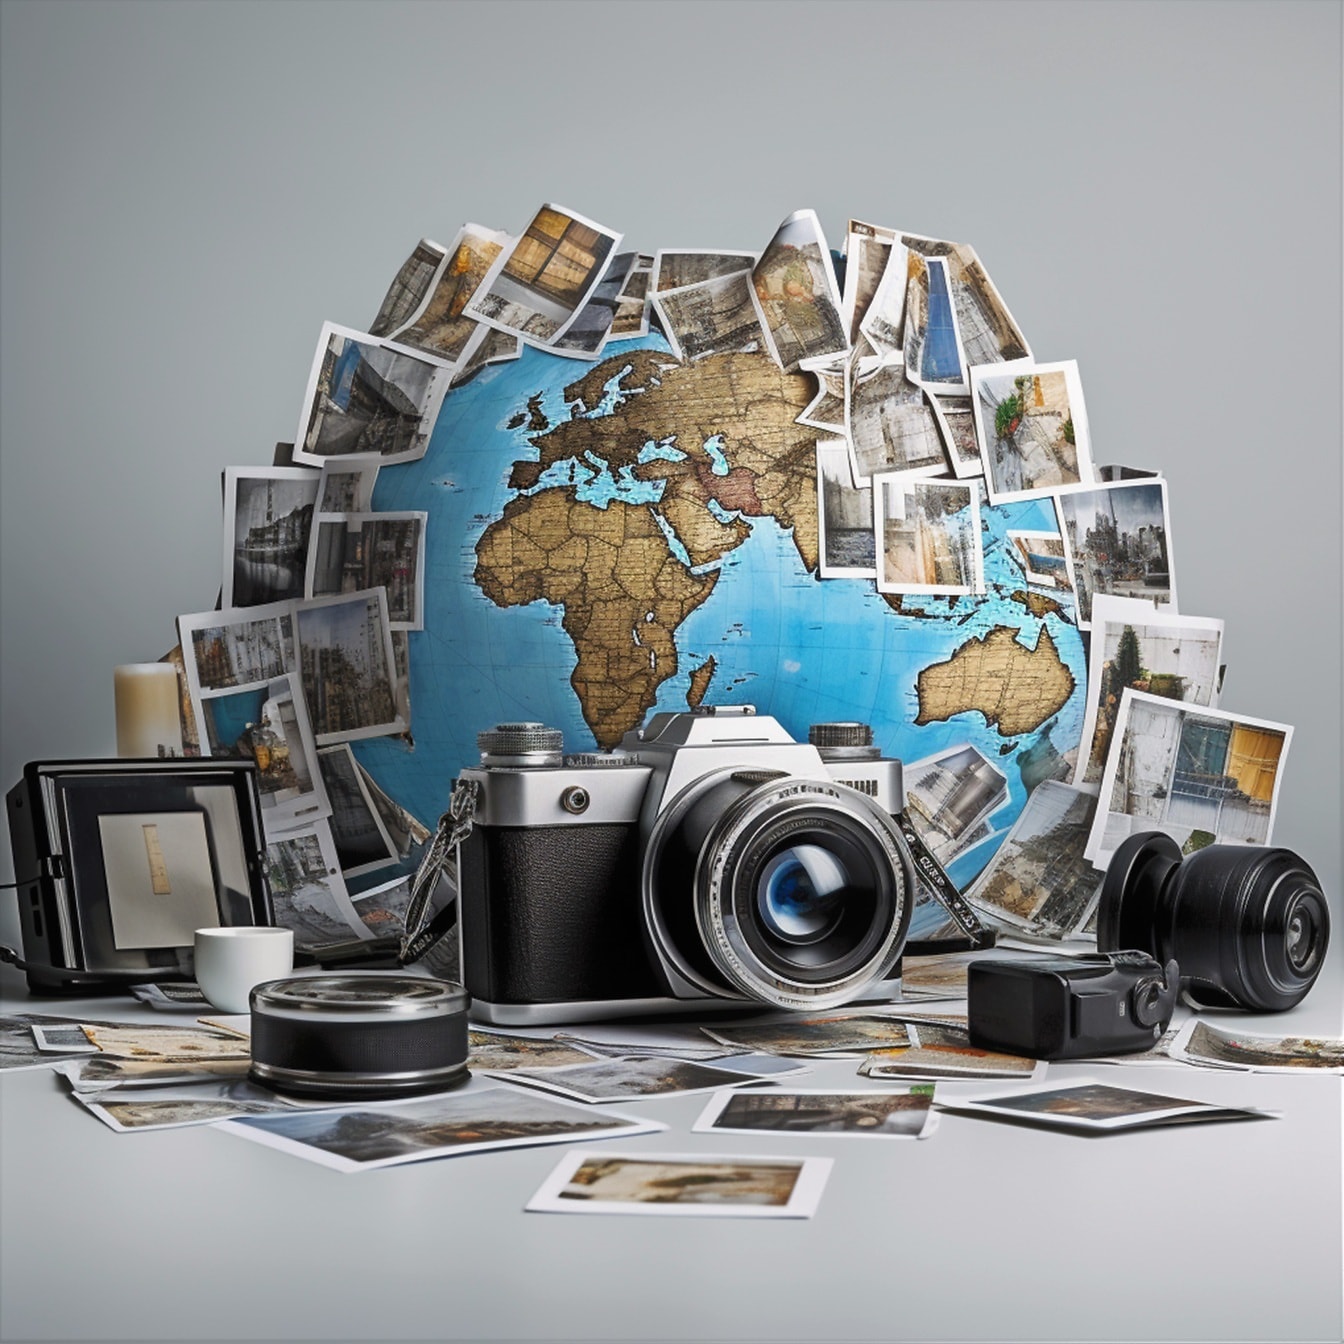 Gratis billeddatabase med digital og analog fotografering